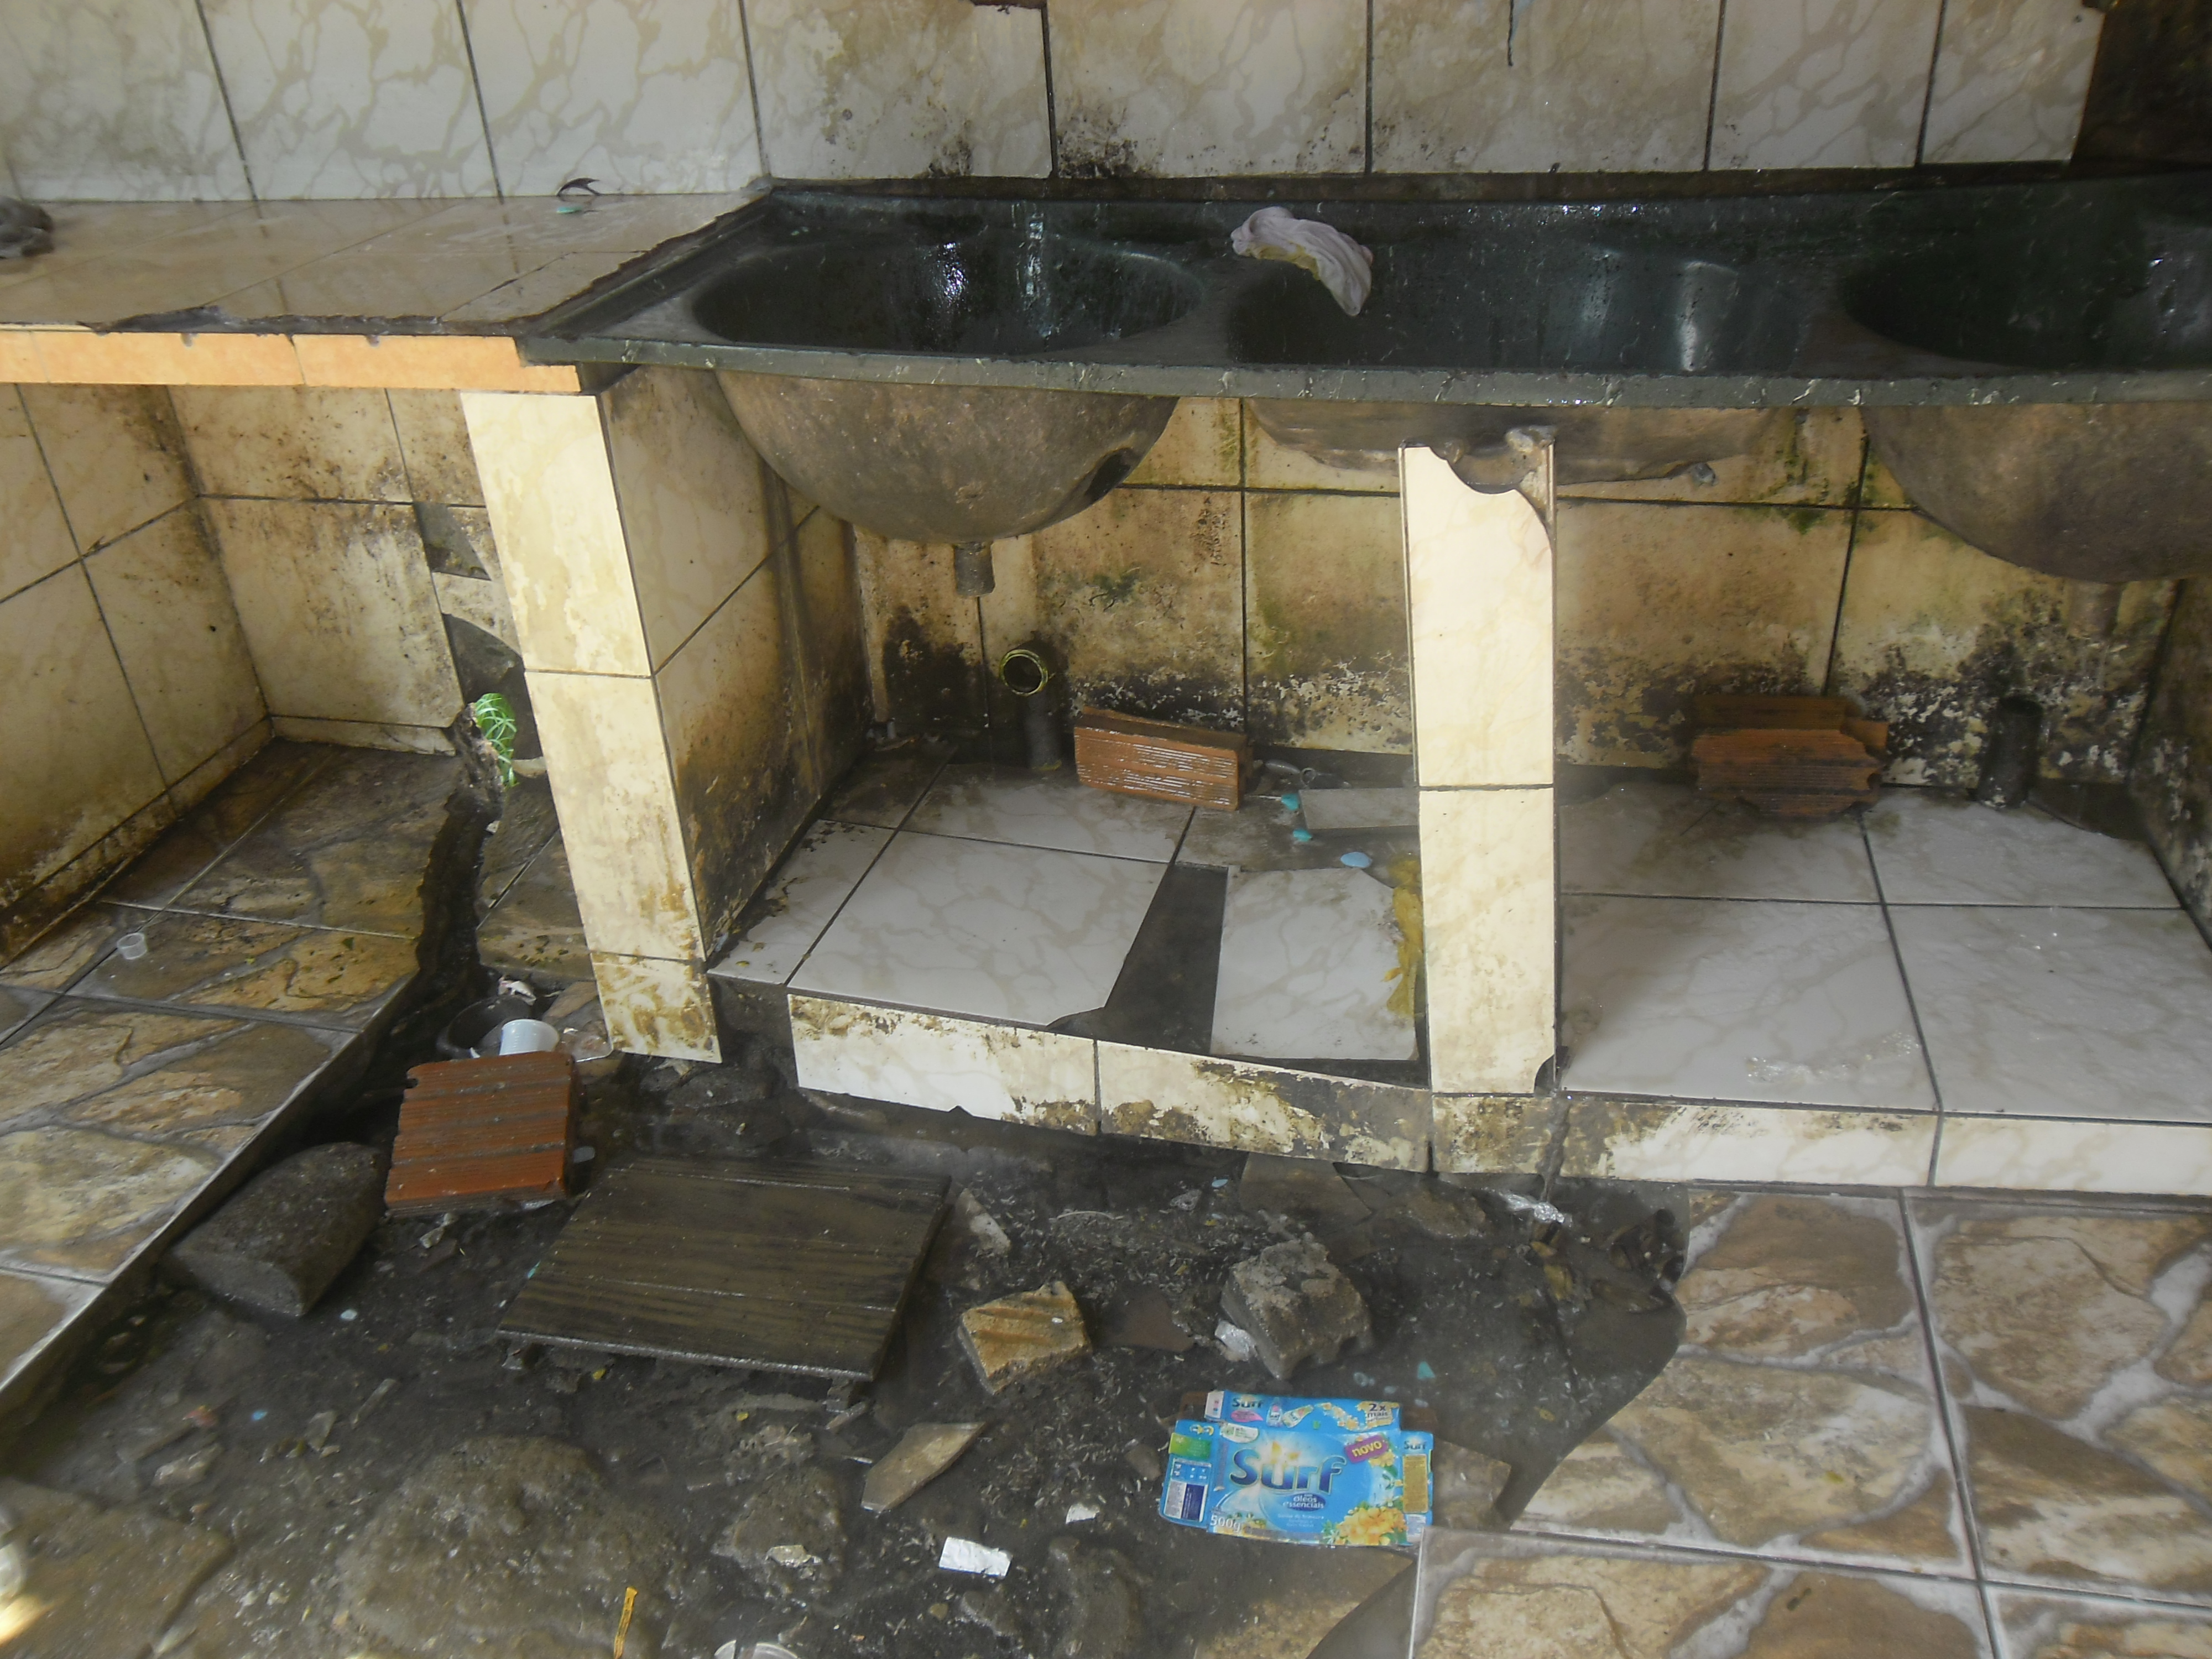 Instalações deterioradas e banheiros emporcalhados são alguns dos problemas vistos na Casai. Foto: Juma Xipaia